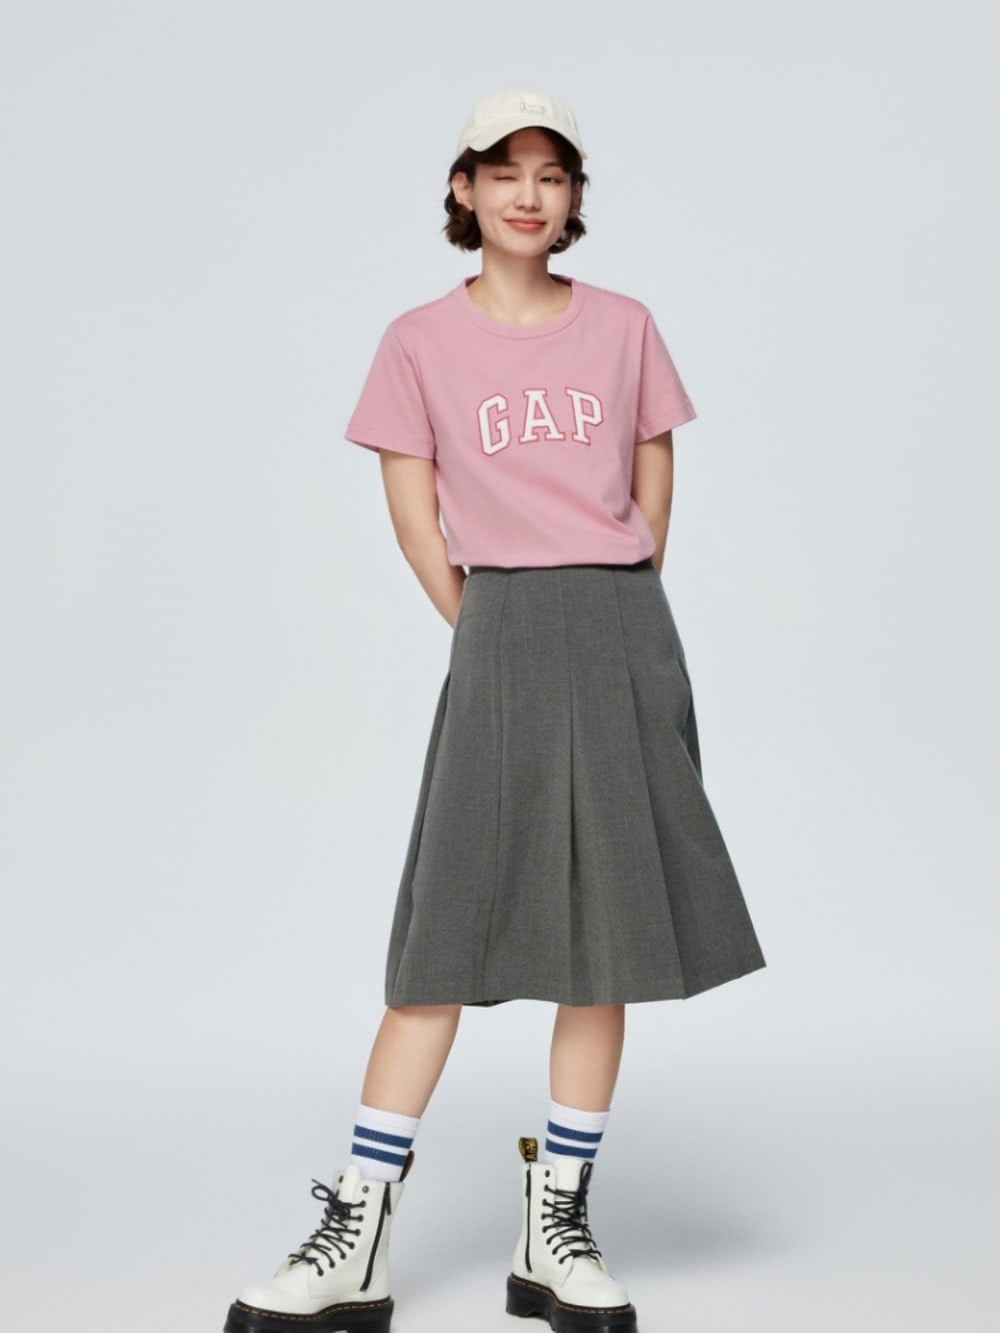 GAP 女裝 Logo純棉圓領短袖T恤-靛藍色(402168